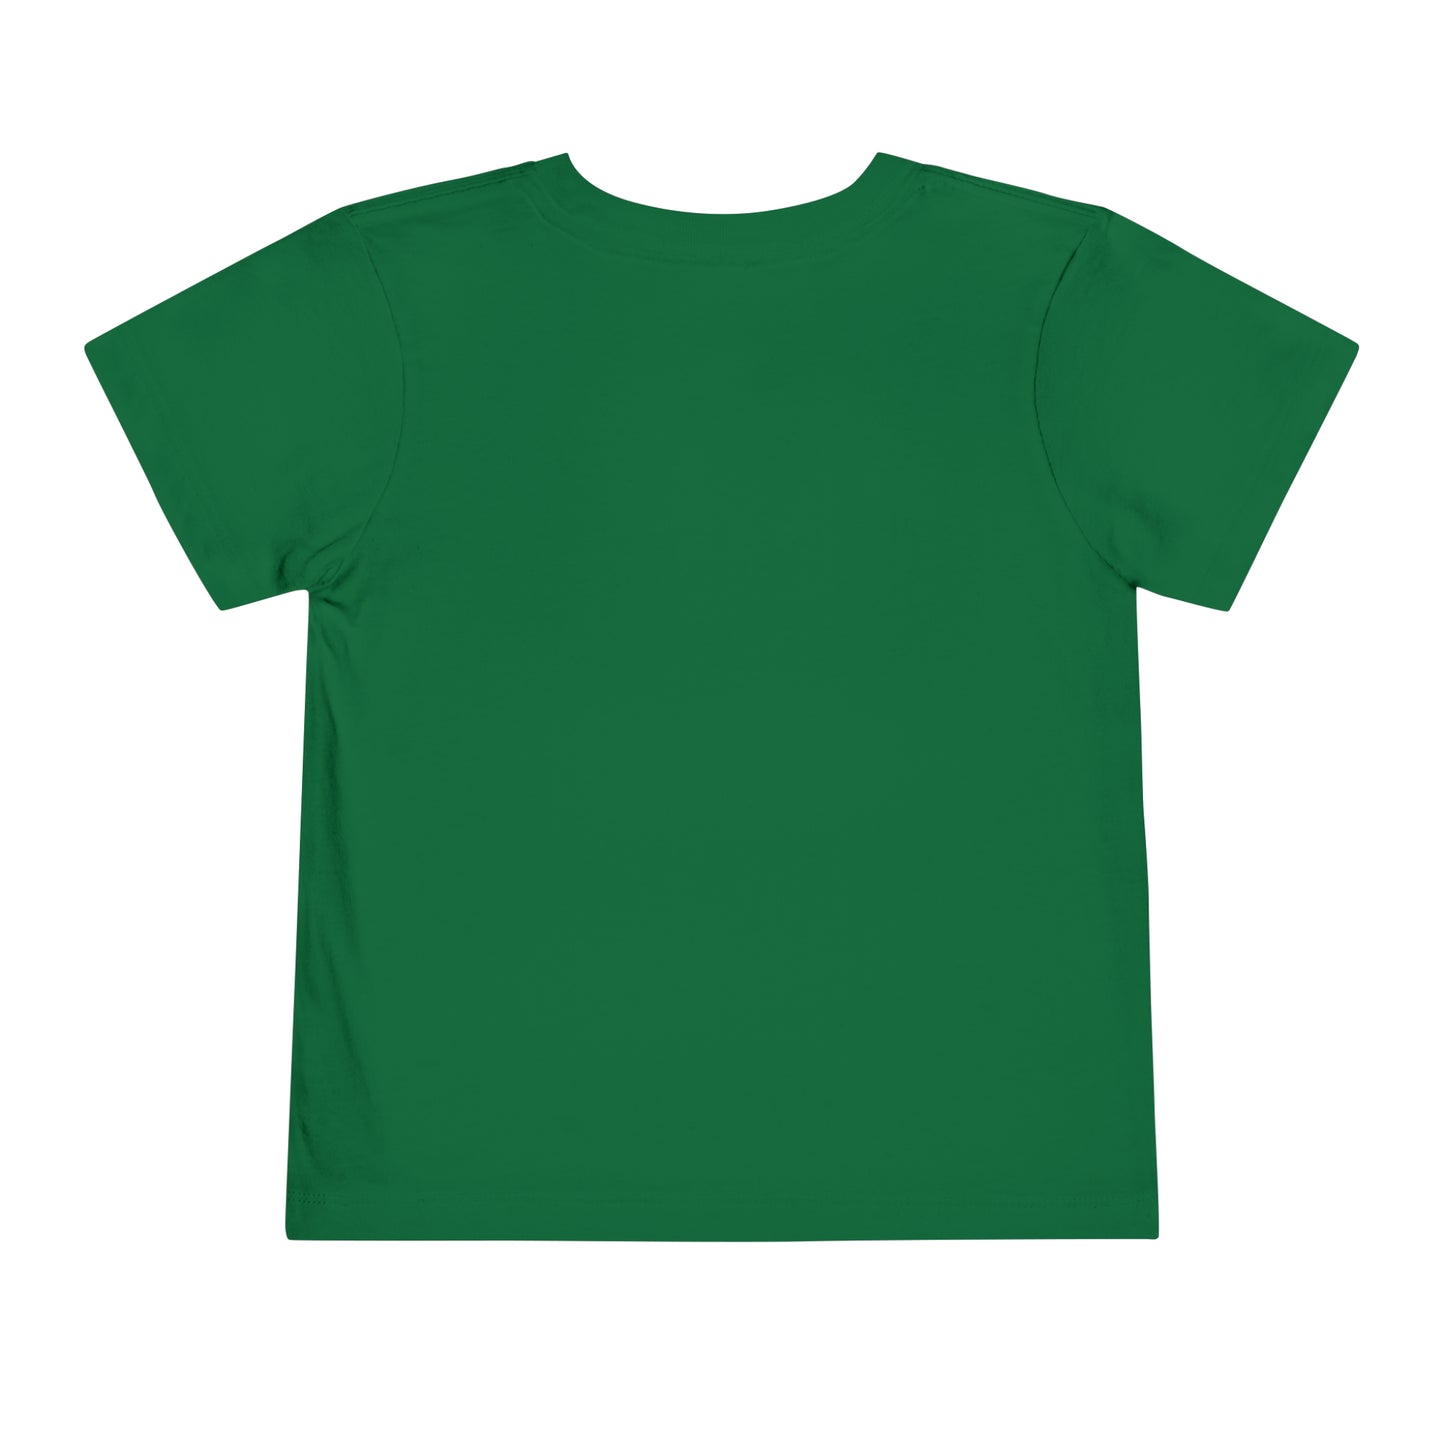 Preschool T-shirt uniform